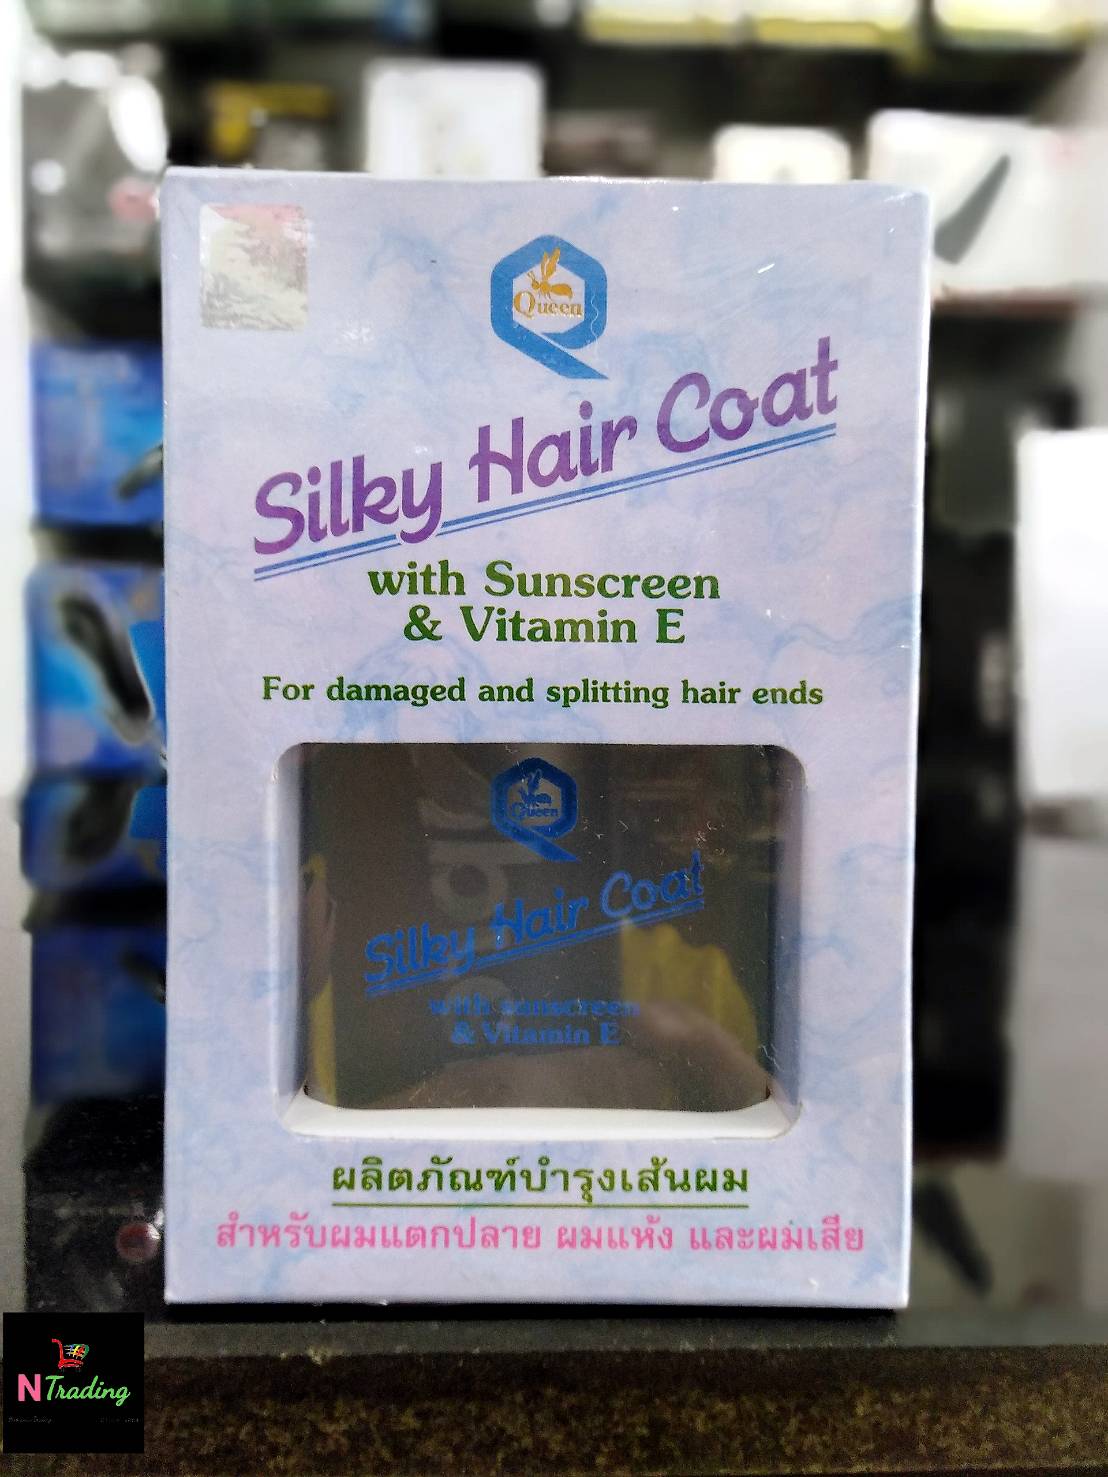 ควีน ซิลกี้ แฮร์โคท / Queen Sillky Hair Coat ปริมาณสุทธิ 85 มล.